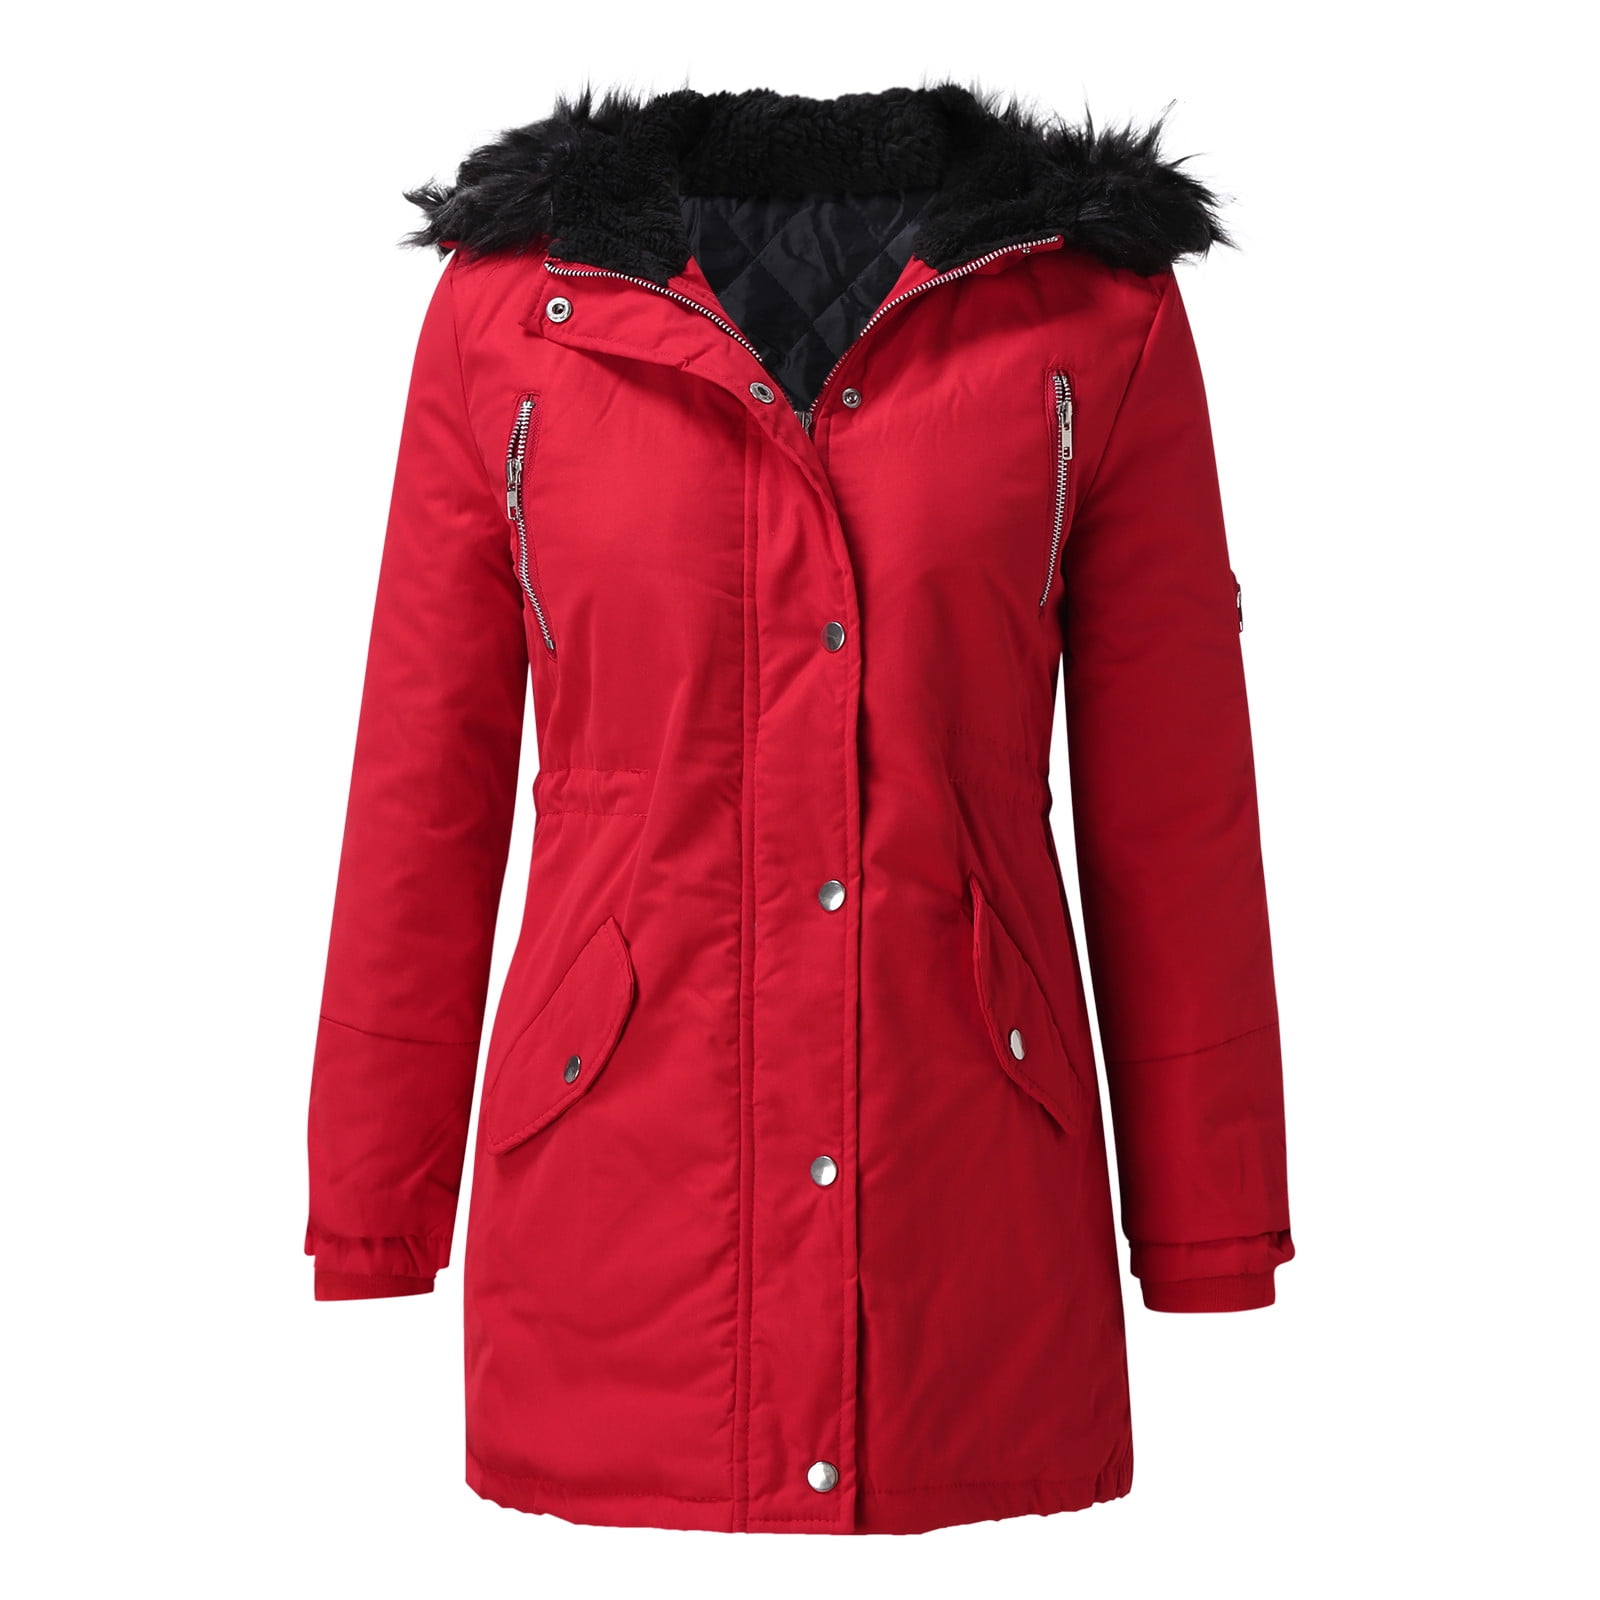 Aayomet Coats For Women Women's Waterproof Ski Jacket Windproof Winter Snow Coat Mountain Outdoor Parka,Red L -